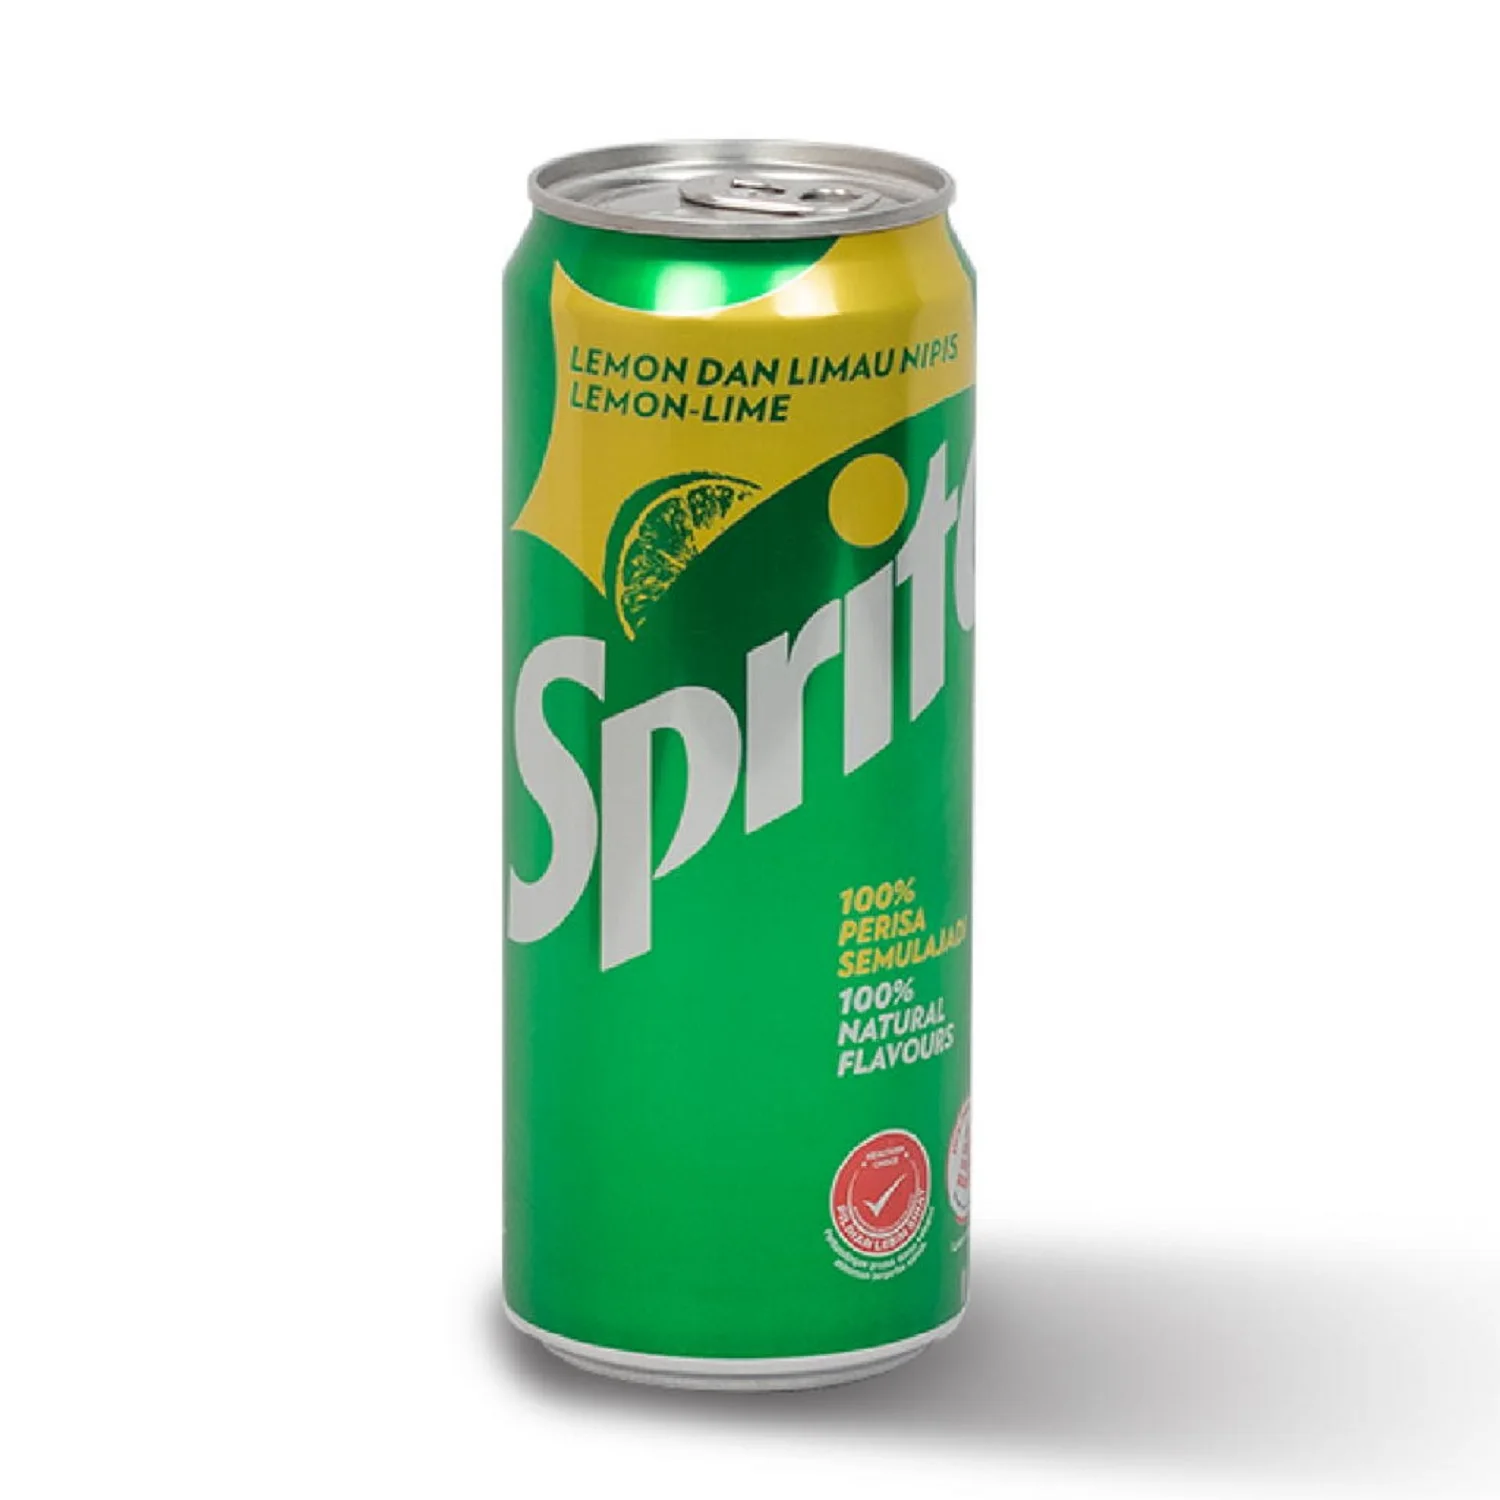 Buy Sprite Soft Drink _400ml Bottle Online At Best Price